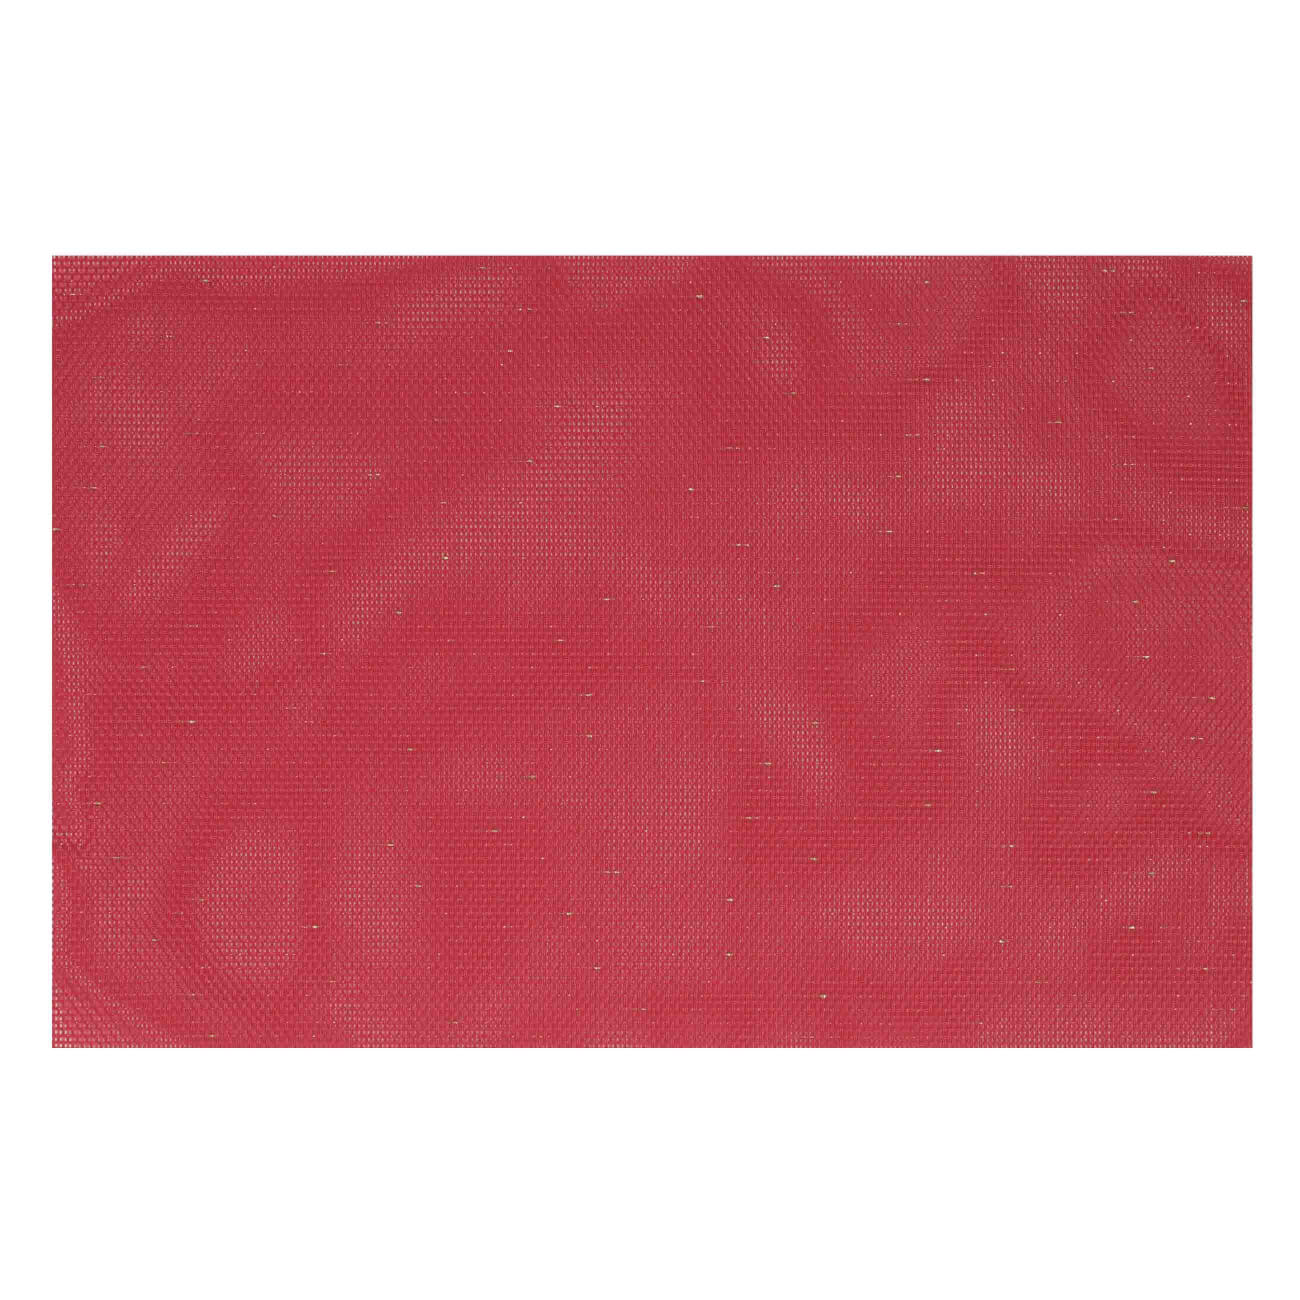 Салфетка под приборы, 30х45 см, ПВХ/полиэстер, прямоугольная, красная, Solid